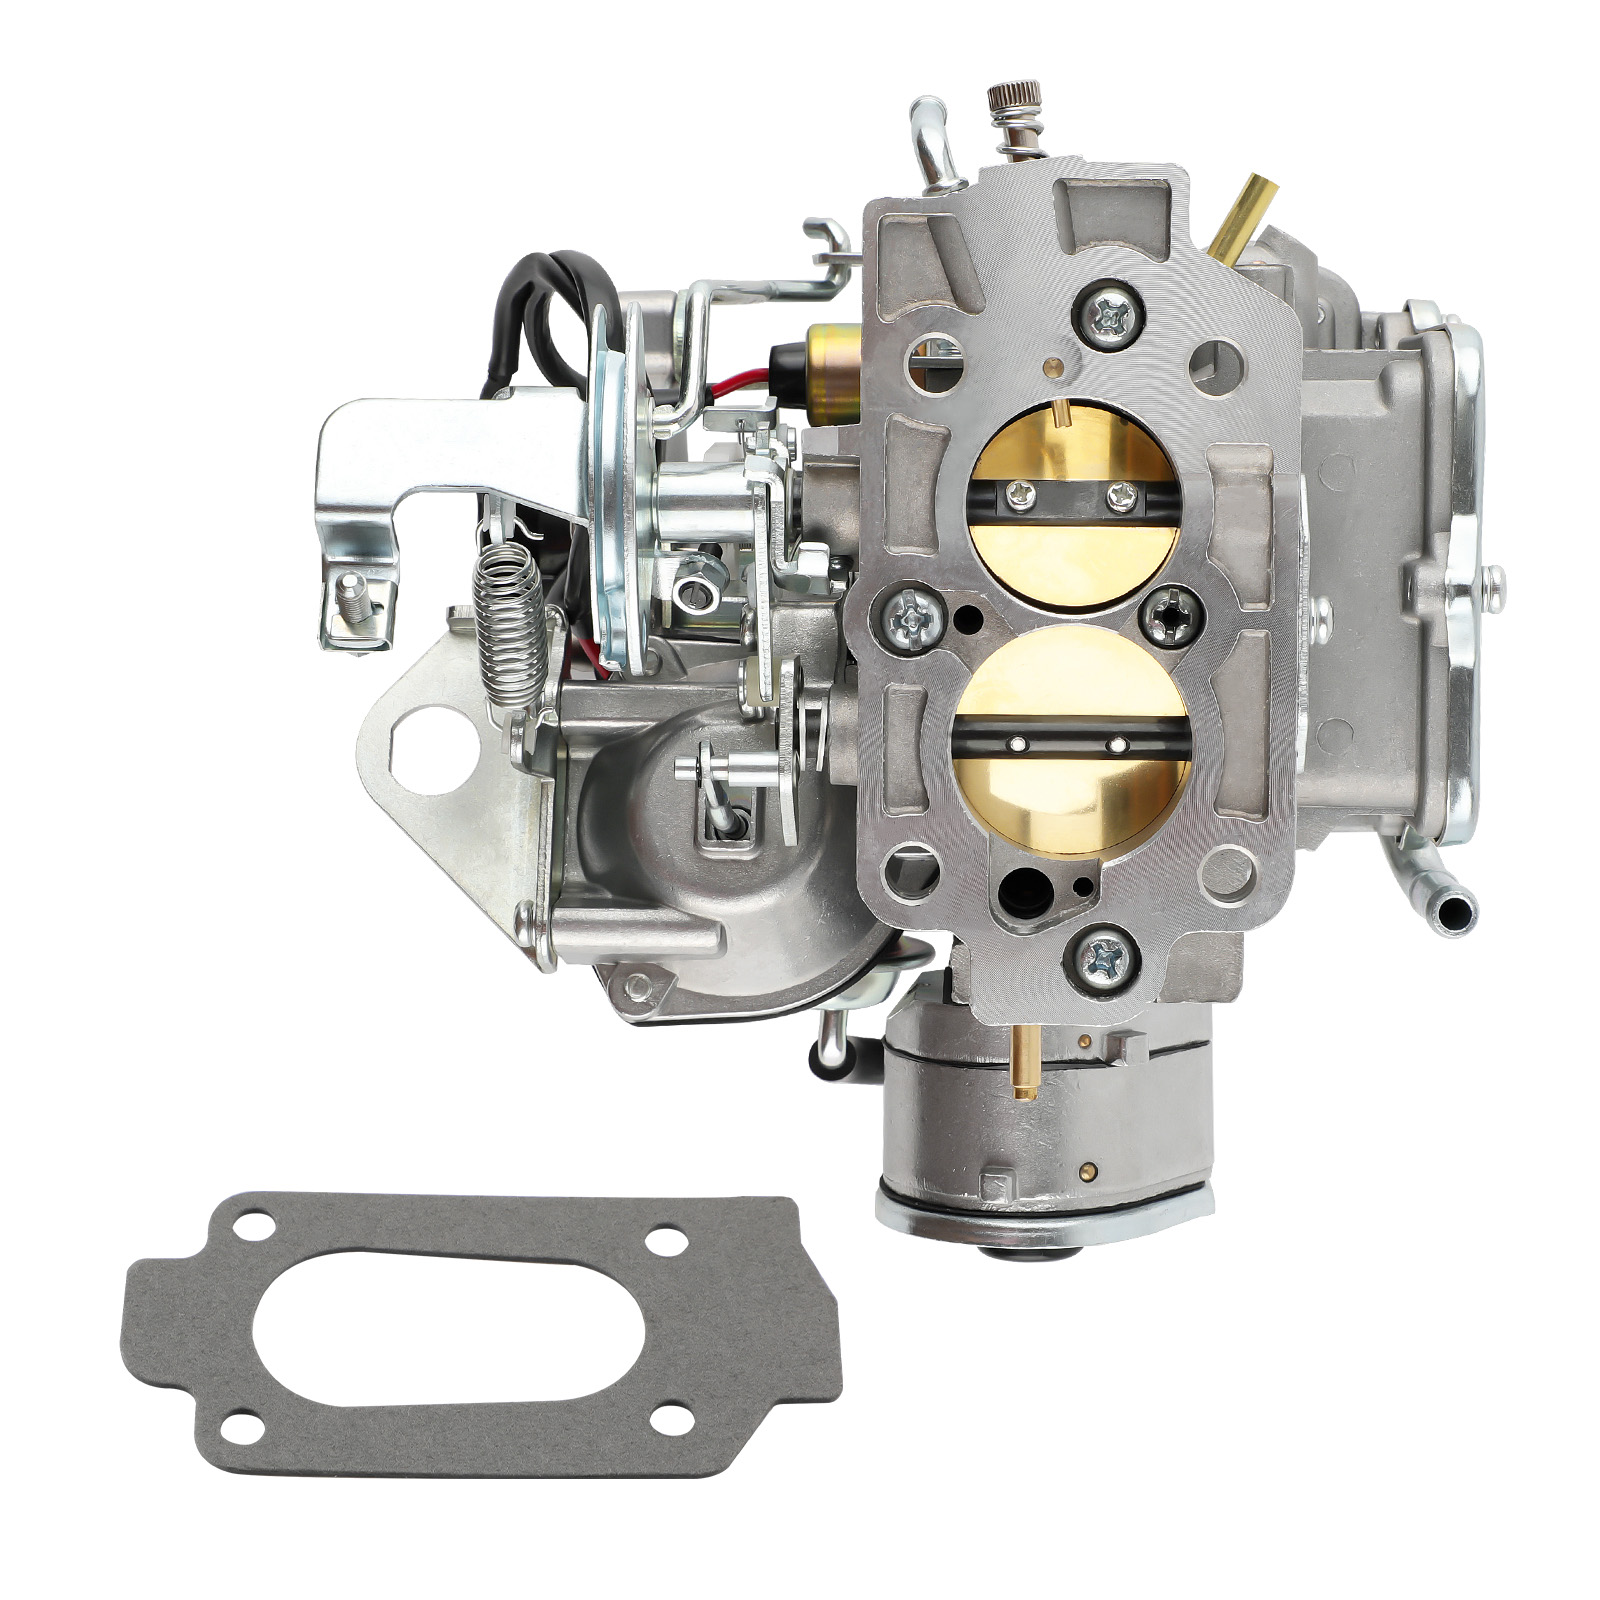 Carburateur pour Nissan 720 pickup 2.4L Z24 Datsun Truck Carburetor 6010-21G61